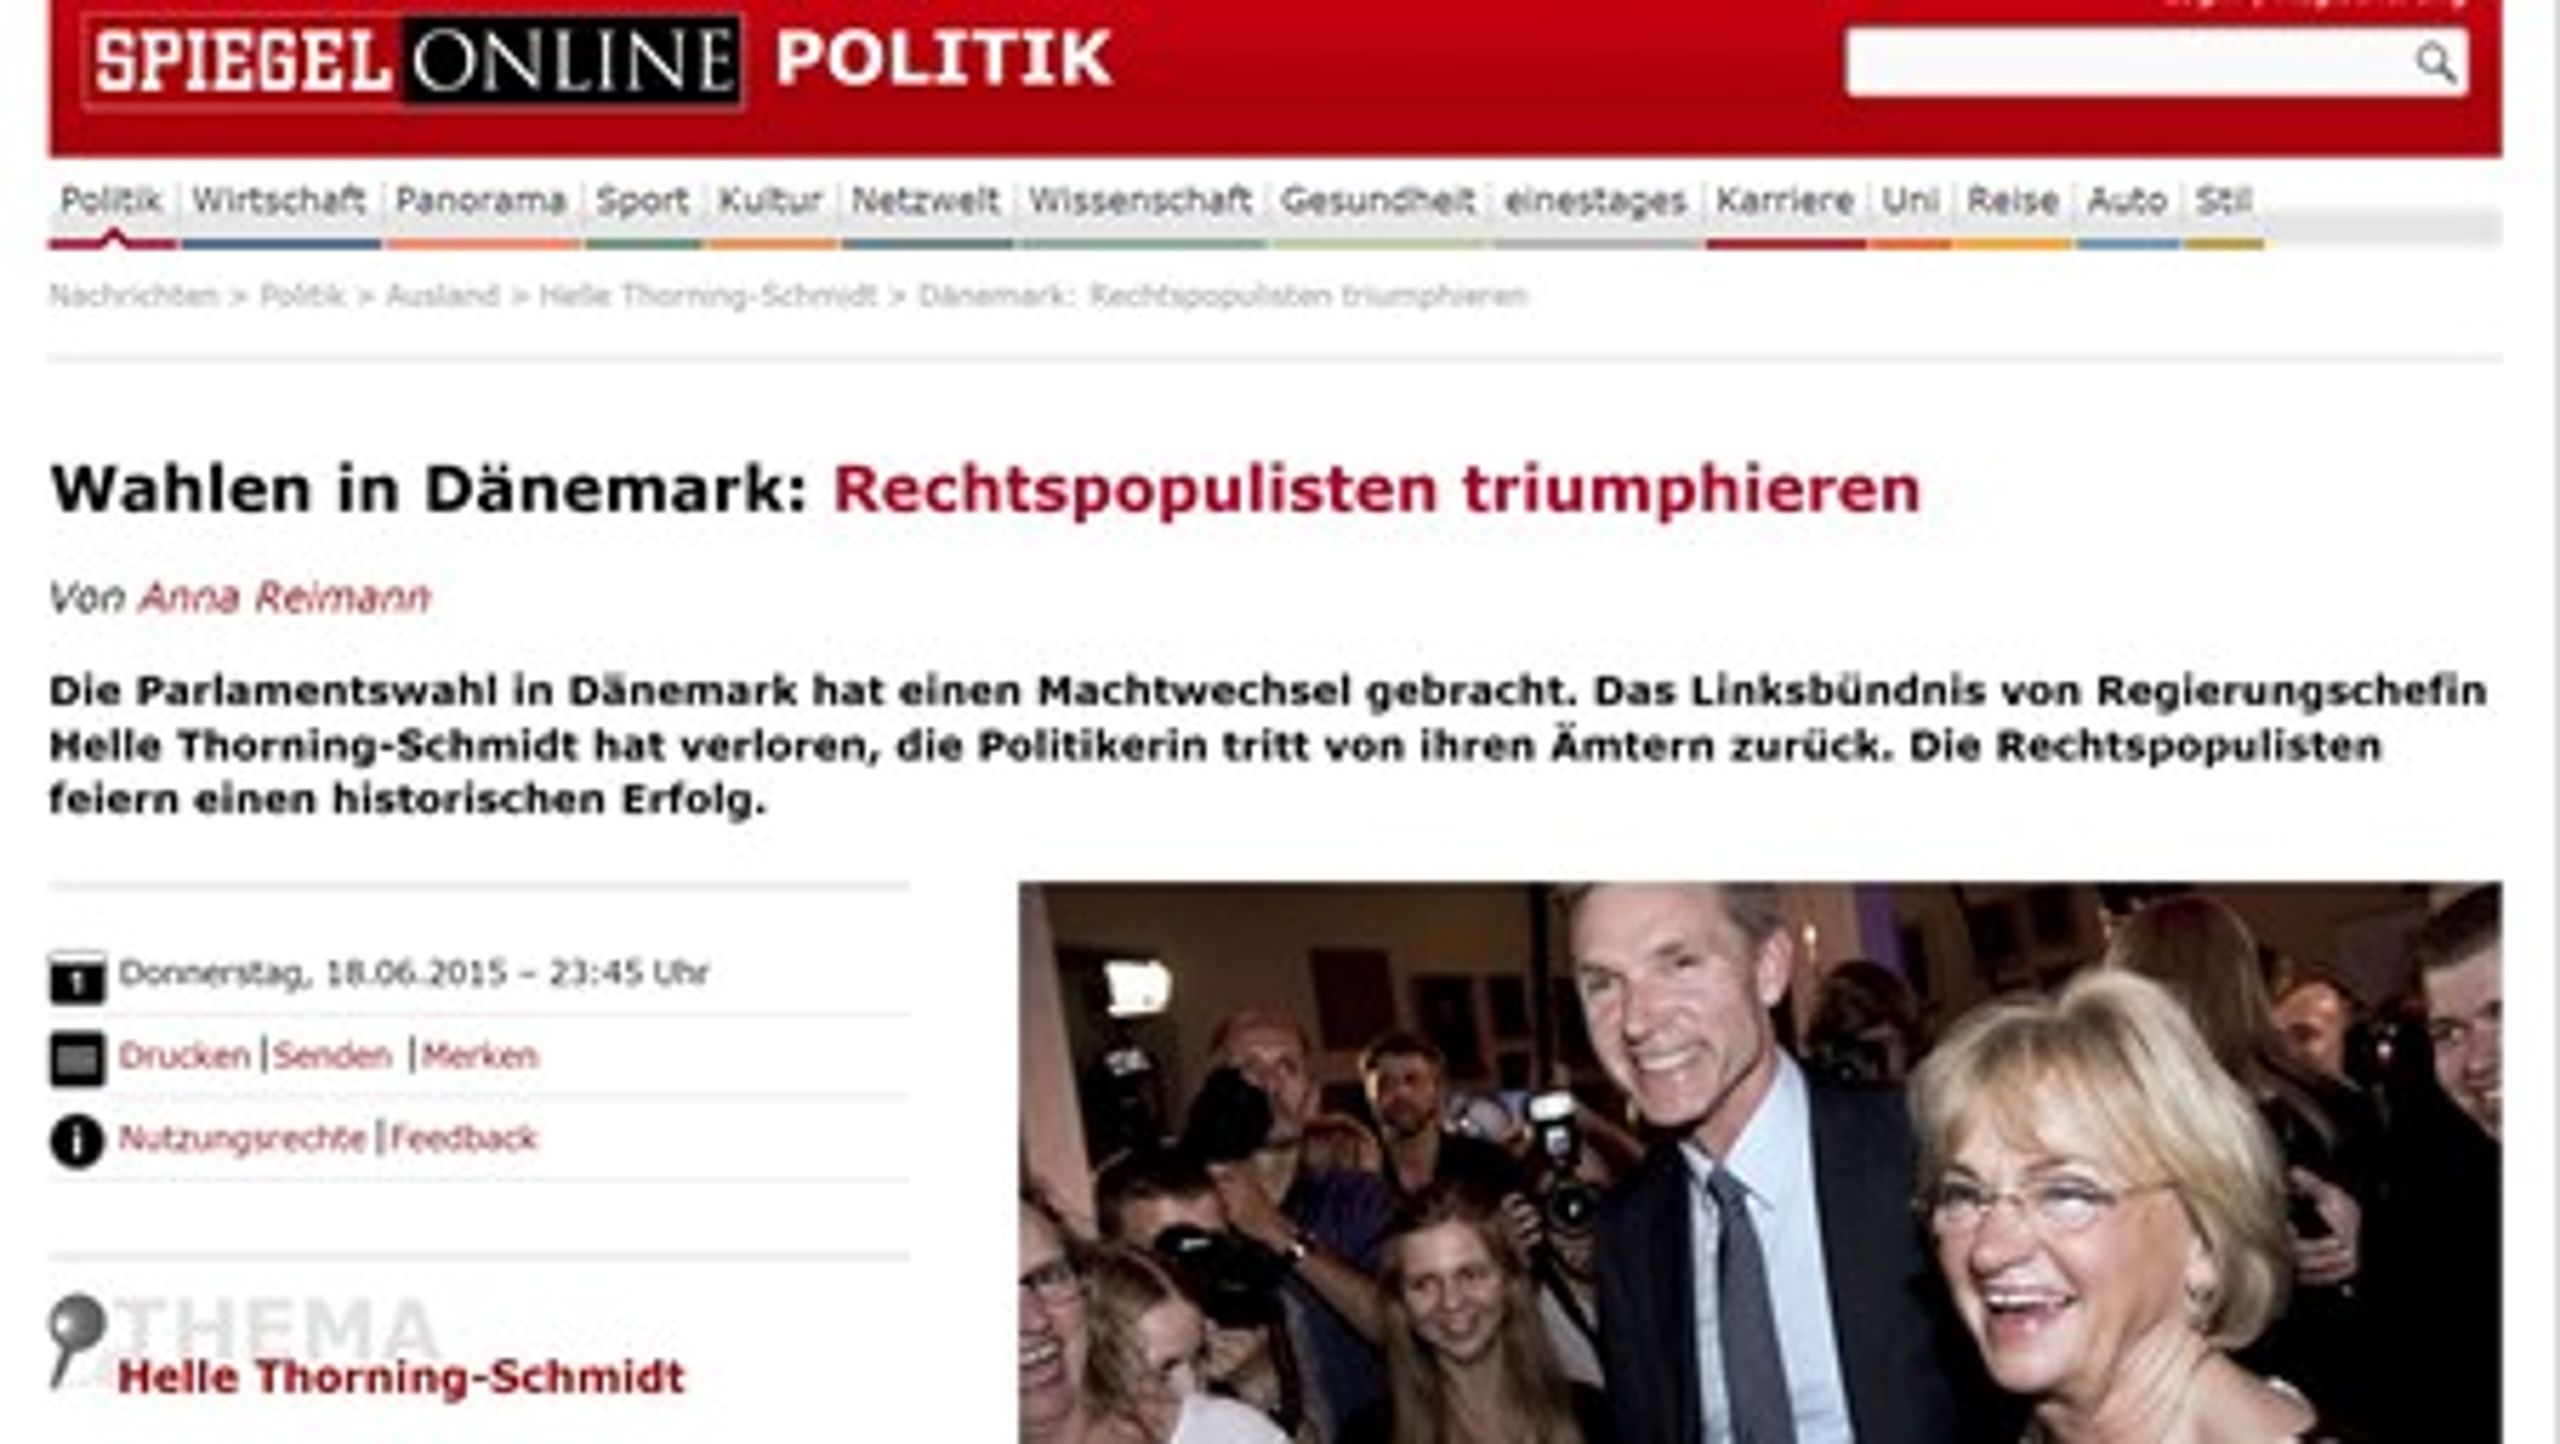 Mange udenlandske medier prøver i dag at finde forklaringer på Dansk Folkepartis fremgang.&nbsp;Blandt andre det tyske medie Der Spiegel hæfter sig ved, at Kristian Thulesen Dahl som formand har anlagt en mere moderat tone og lagt større vægt på socialpolitikken.